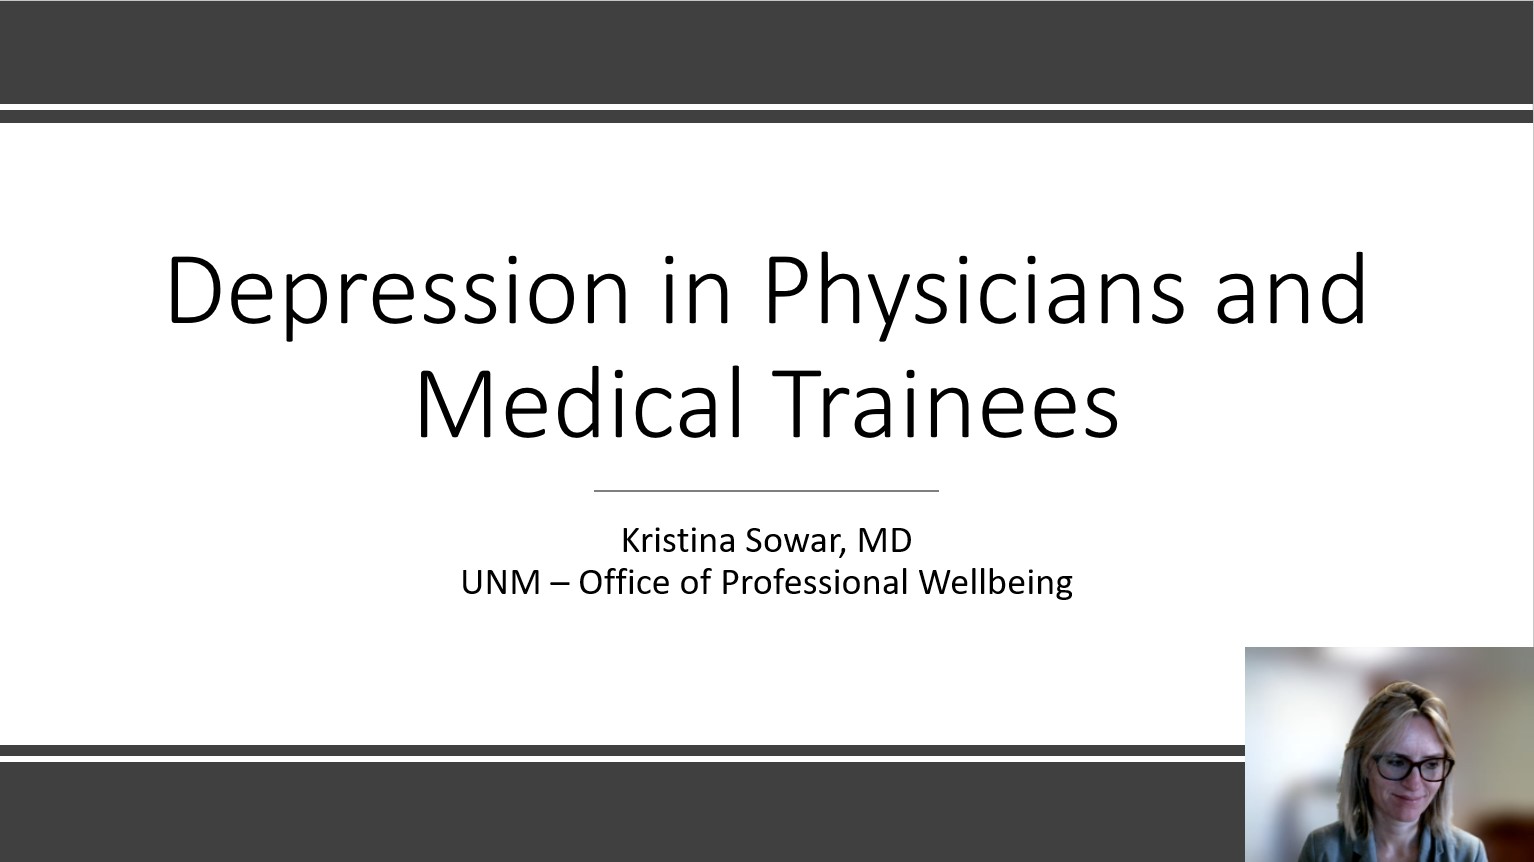 चिकित्सकों और चिकित्सा प्रशिक्षुओं में अवसाद